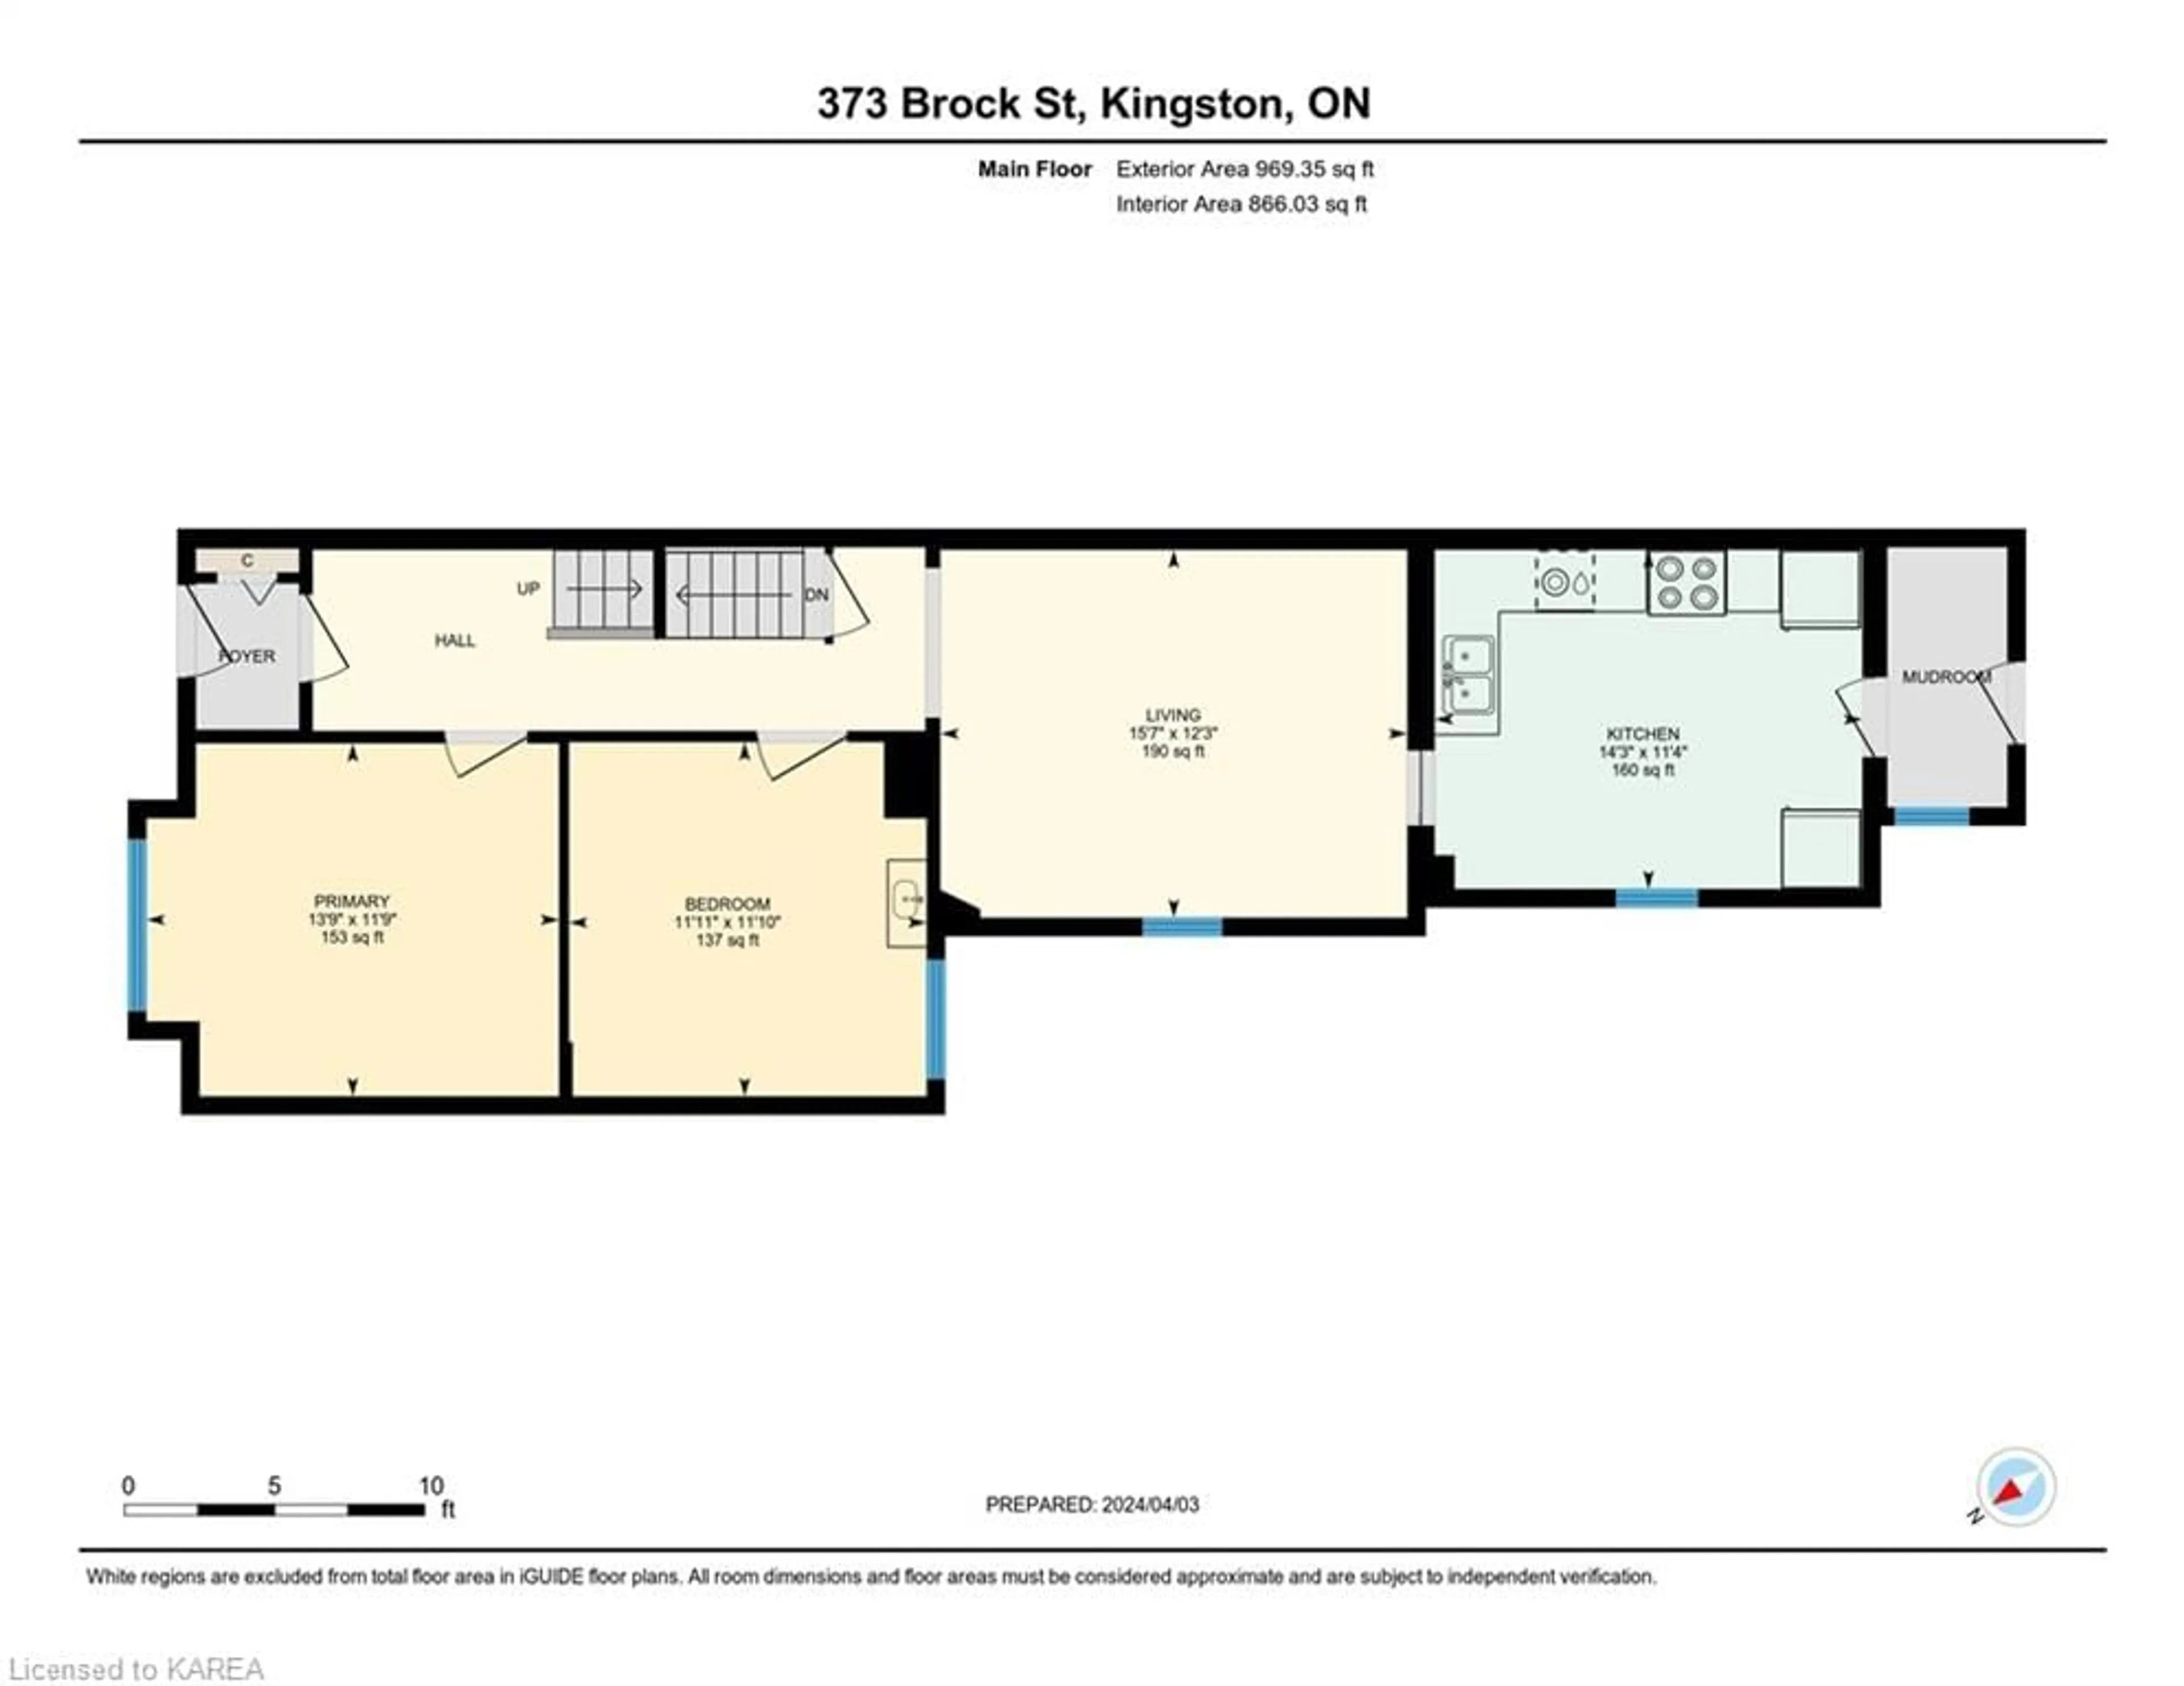 Floor plan for 373 Brock St, Kingston Ontario K7L 1T3